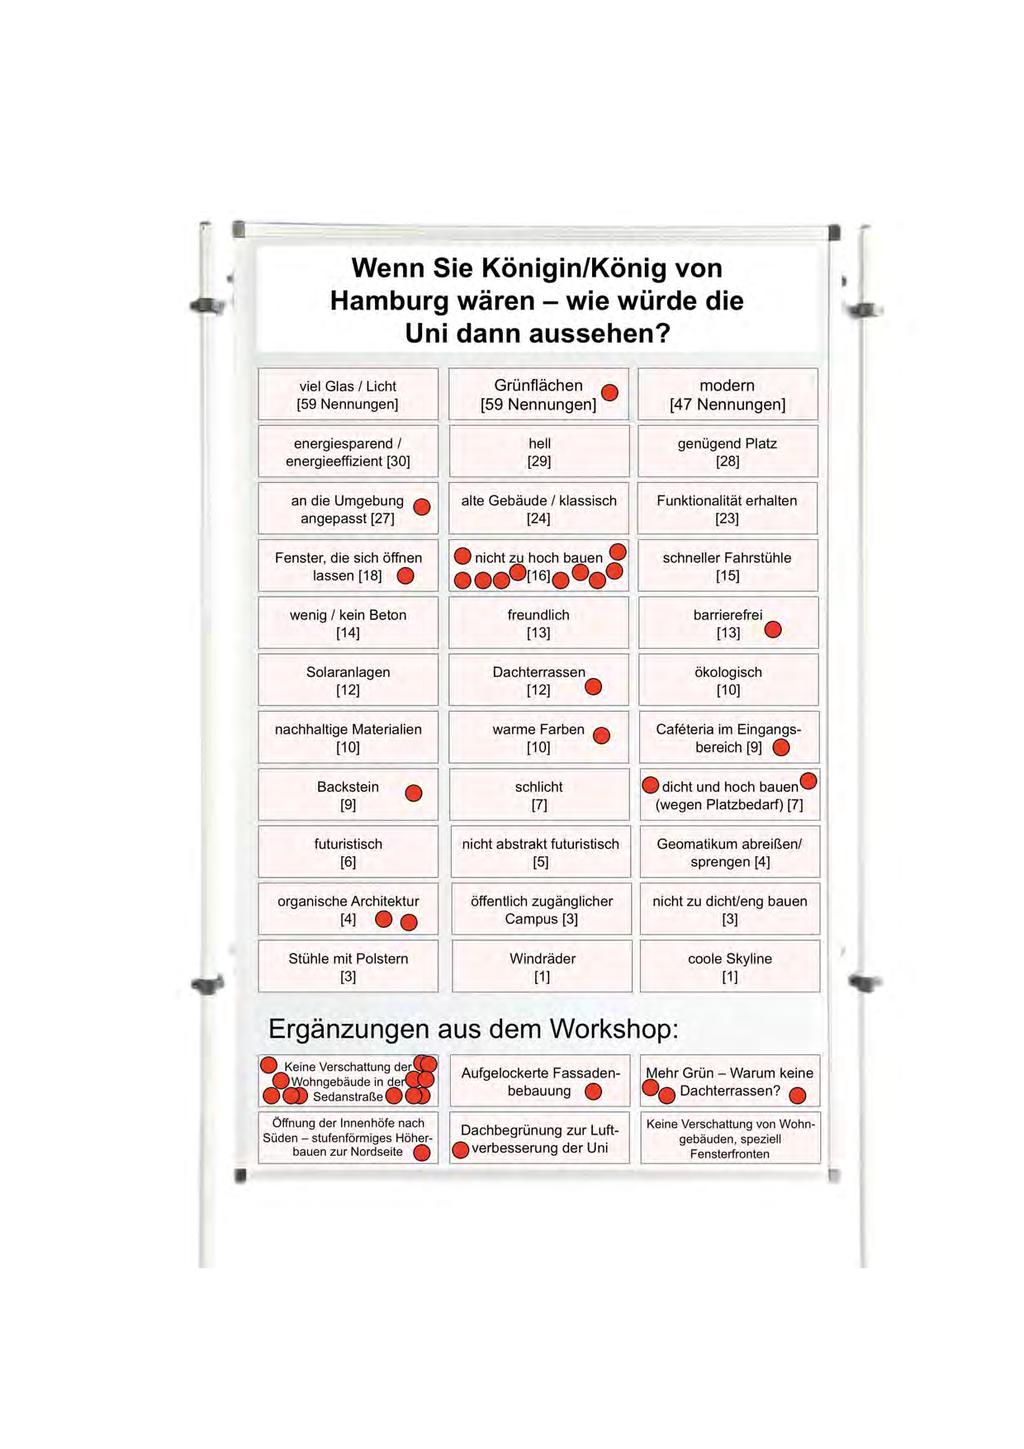 11 Wenn Sie Königin/König von Hamburg wären - wie würde die Uni dann aussehen?